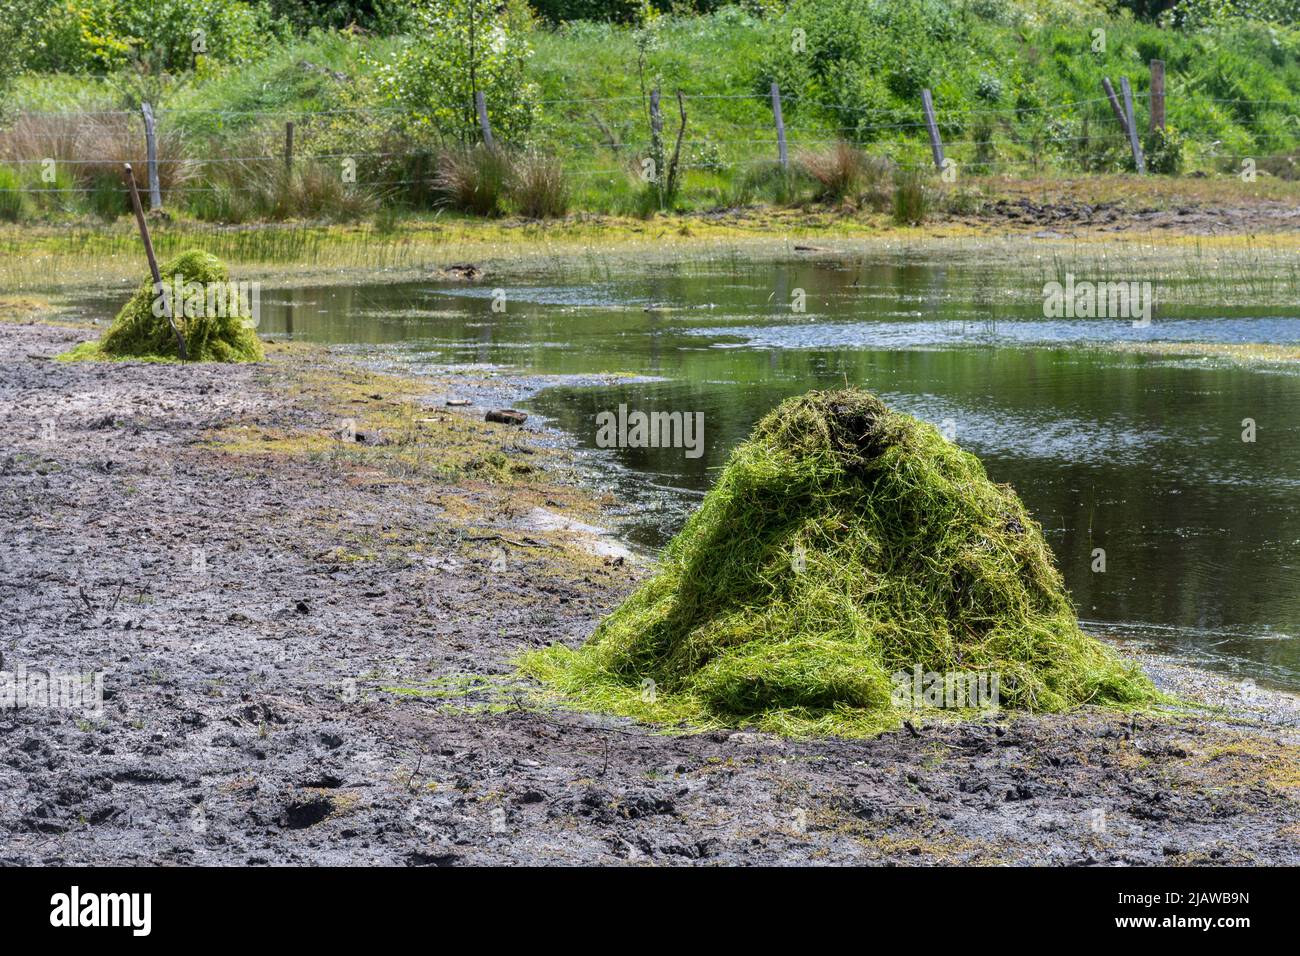 Entfernung der invasiven Pflanze Crassula helmsii, einer nicht-einheimischen eingeführten Art, aus einem großen Teich in Hampshire, Großbritannien. Haufen gerodeten Crassula durch Teich. Stockfoto